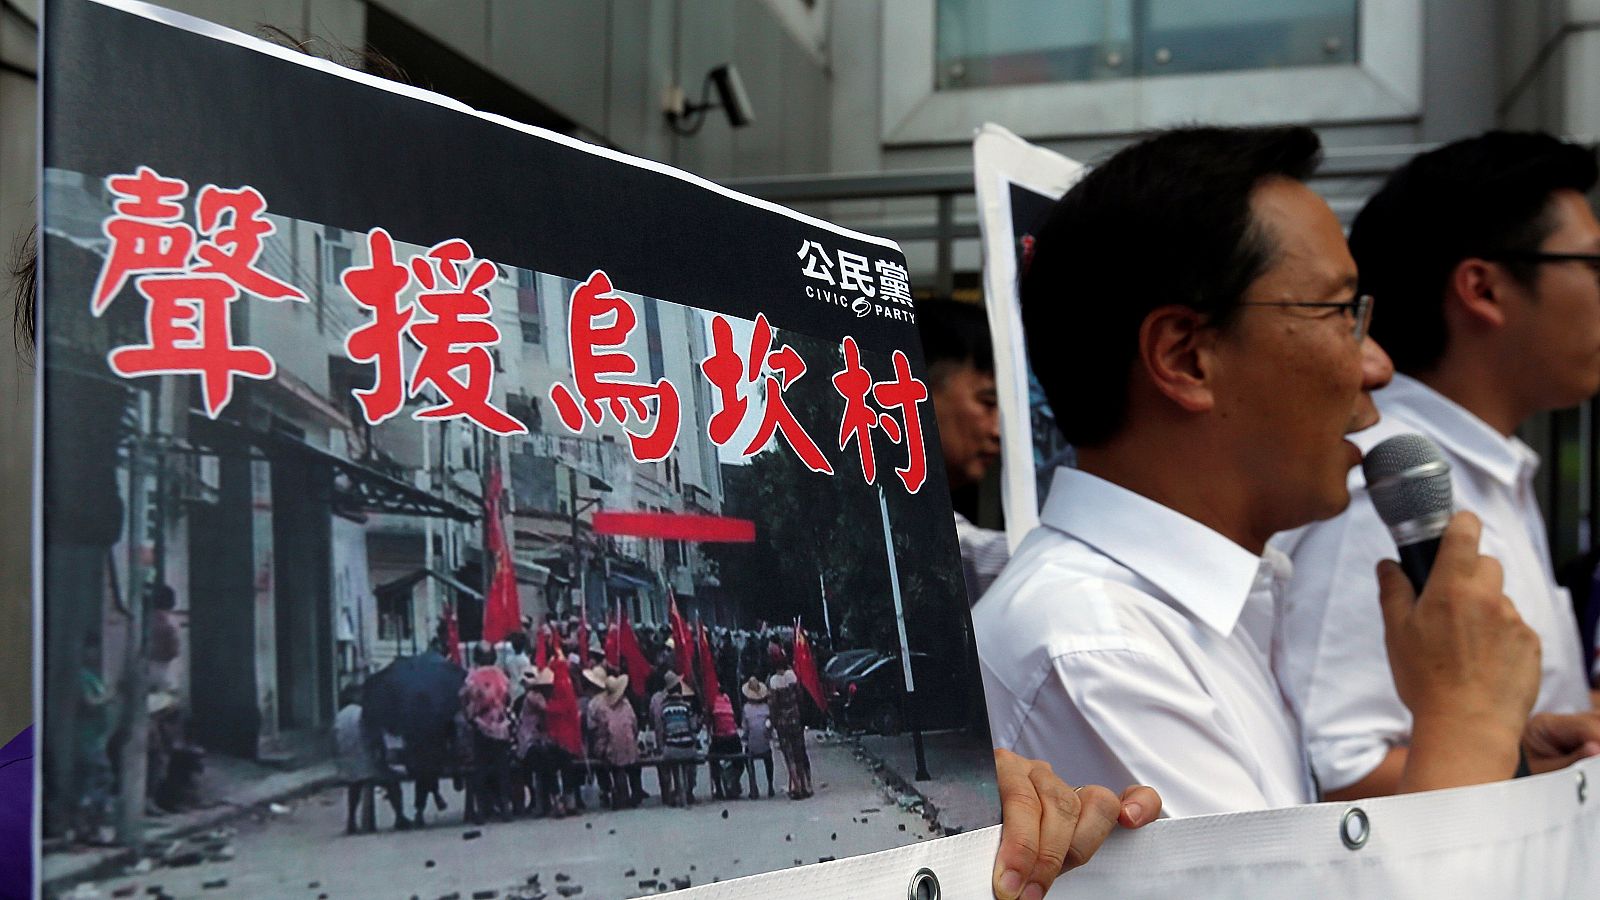 Manifestantes muestran fotografías de la protesta en Wukan durante un acto de apoyo en Hong Kong, el 14 de septiembre de 2016. REUTERS/Bobby Yip